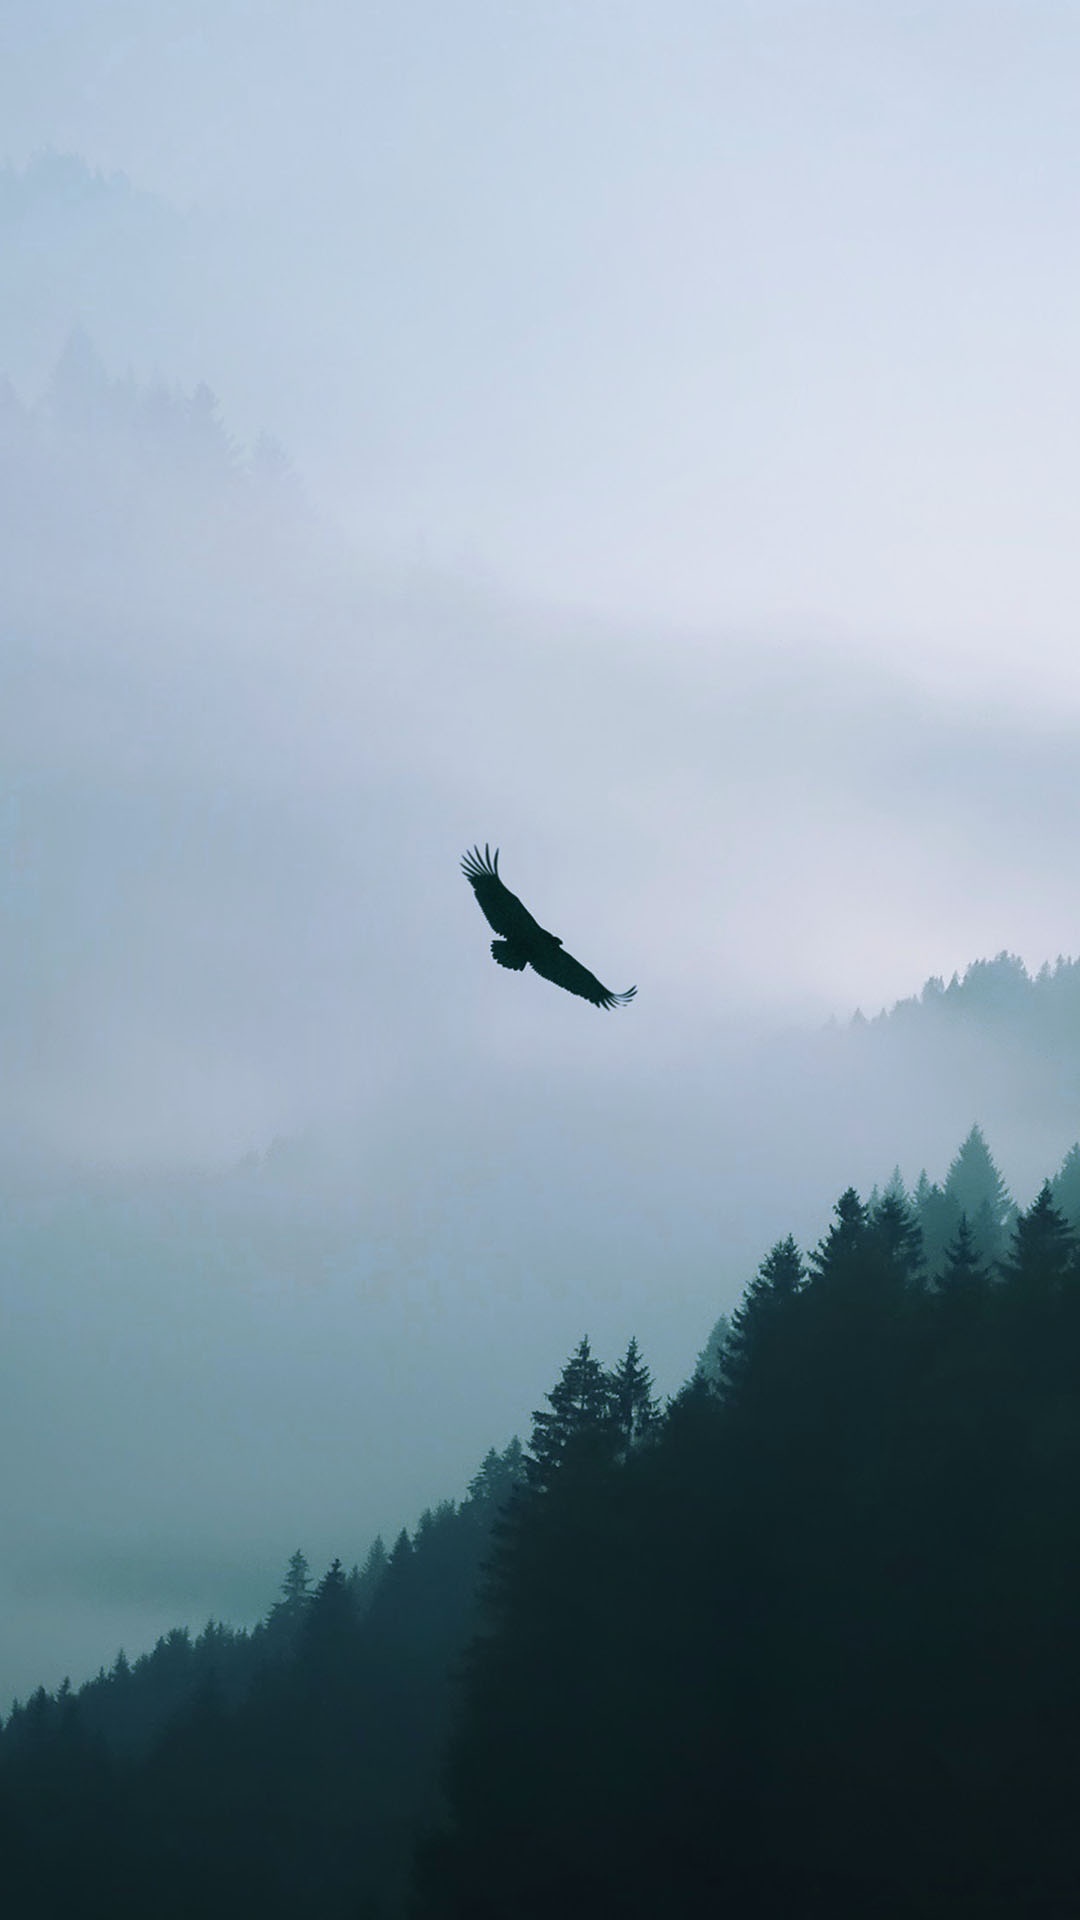 鹰飞越迷雾森林